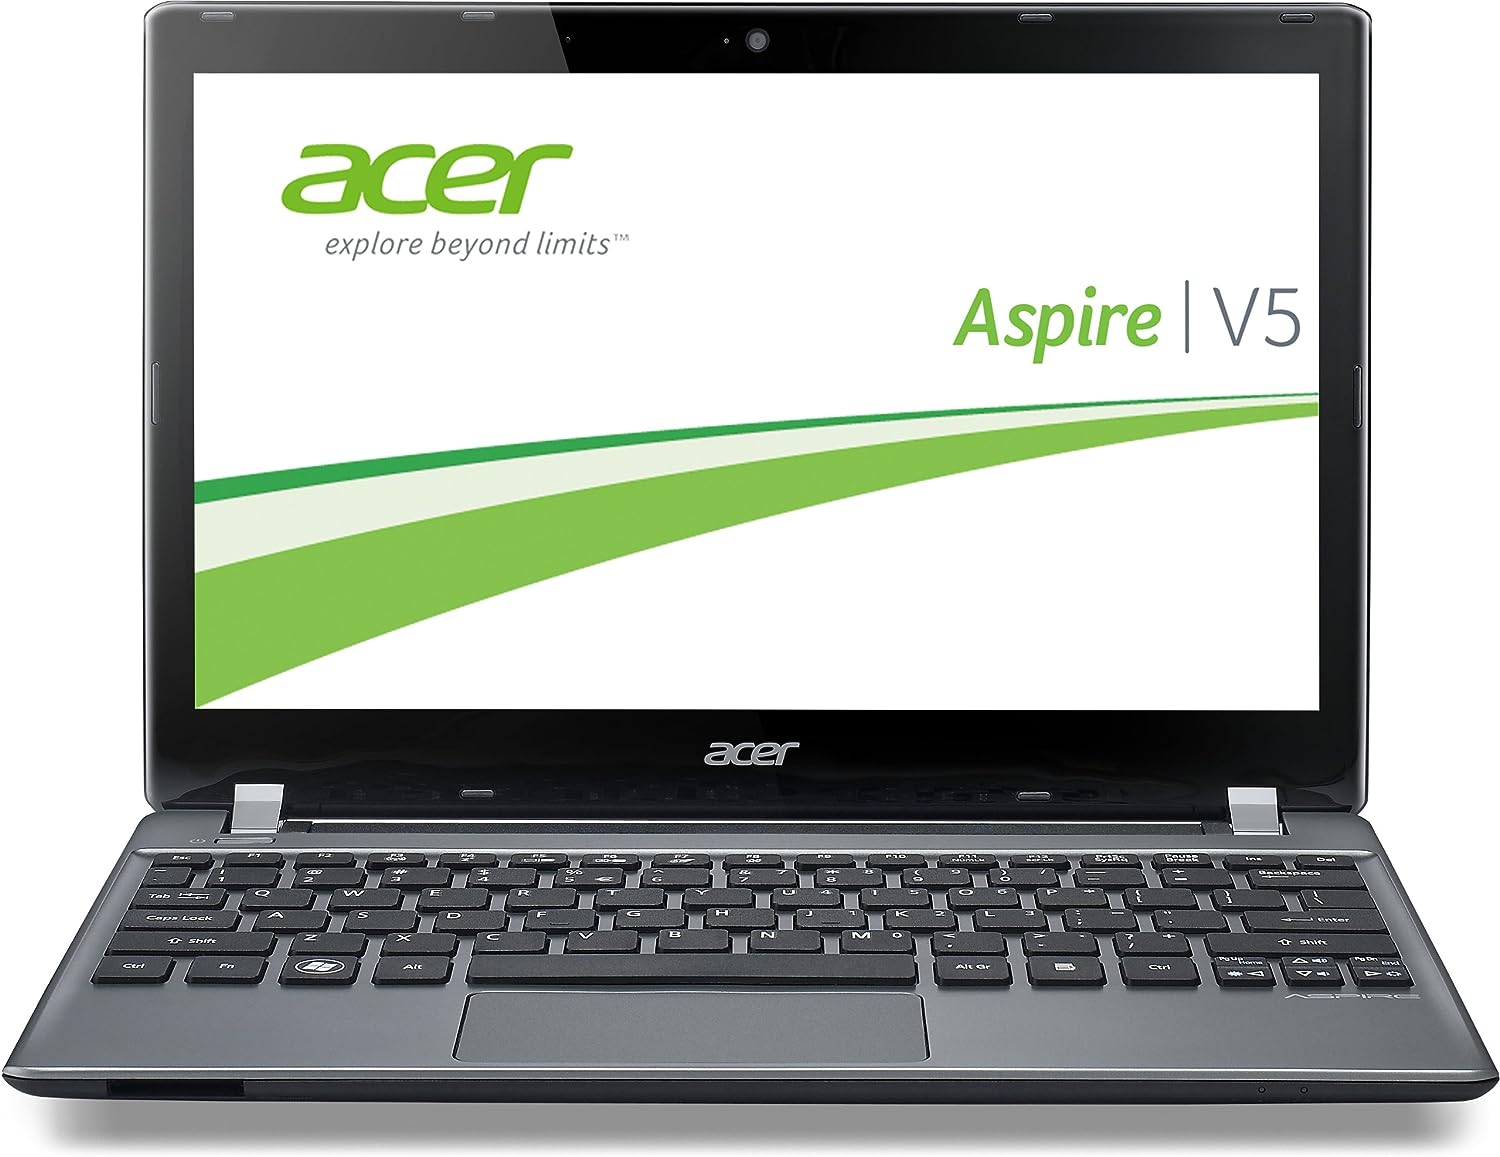 Acer Aspire V5-473 Notebook